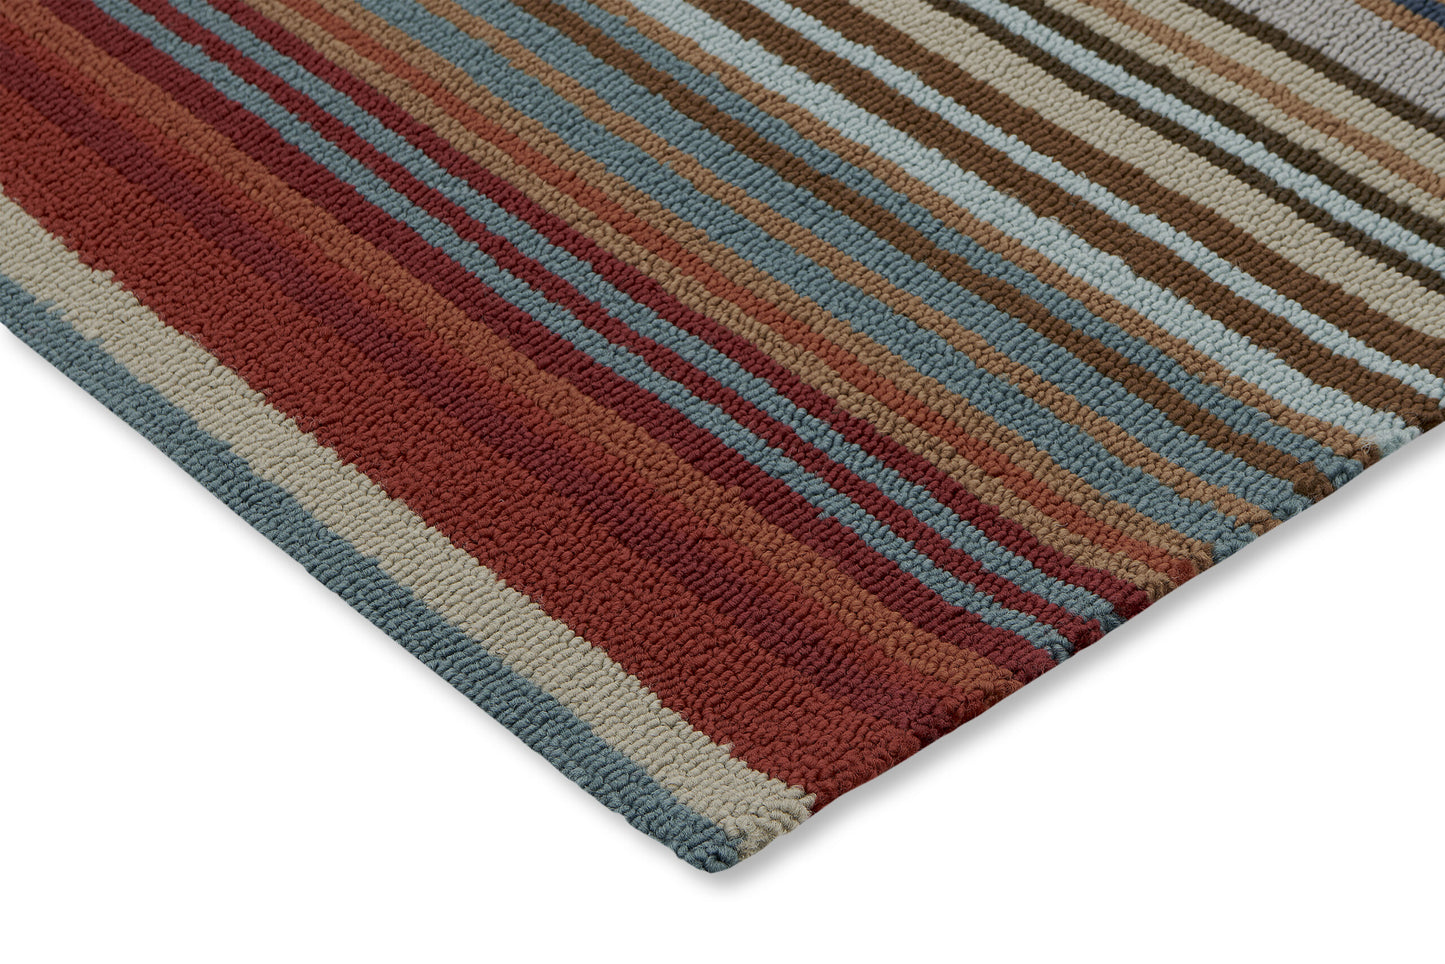 SS-103: Indoor/Outdoor Carpet